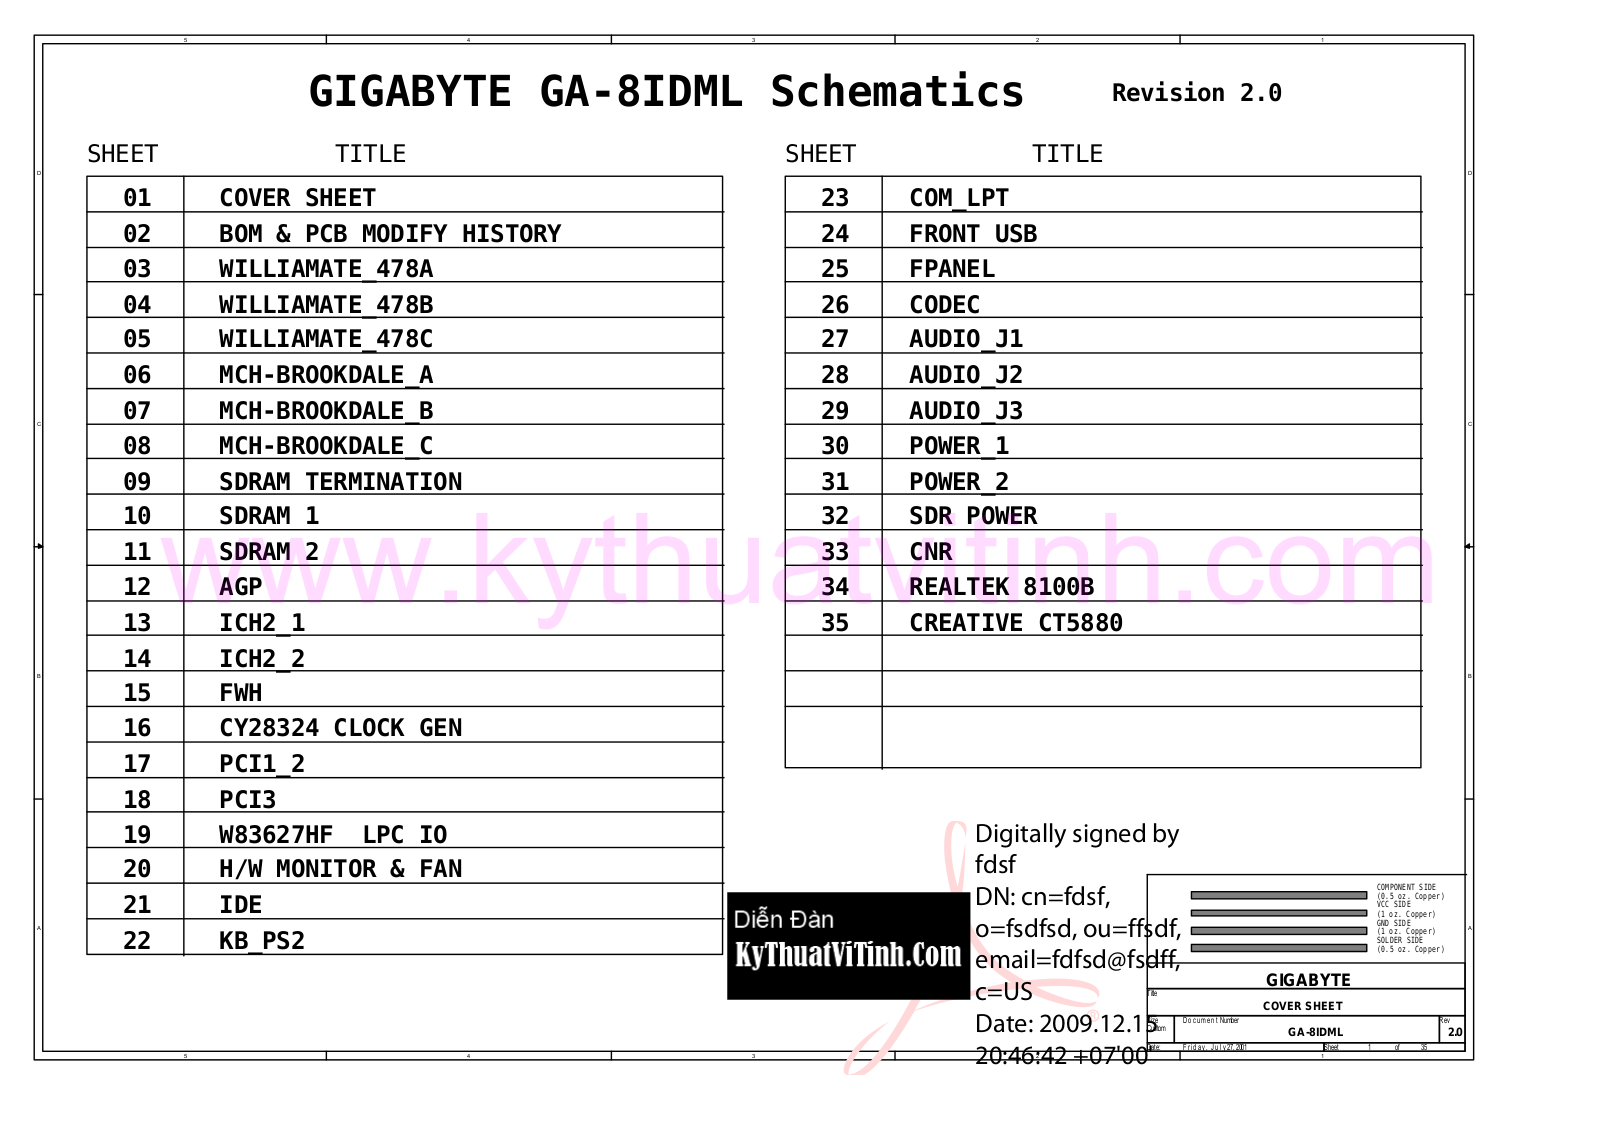 Gigabyte GA-8IDML20 Schematic